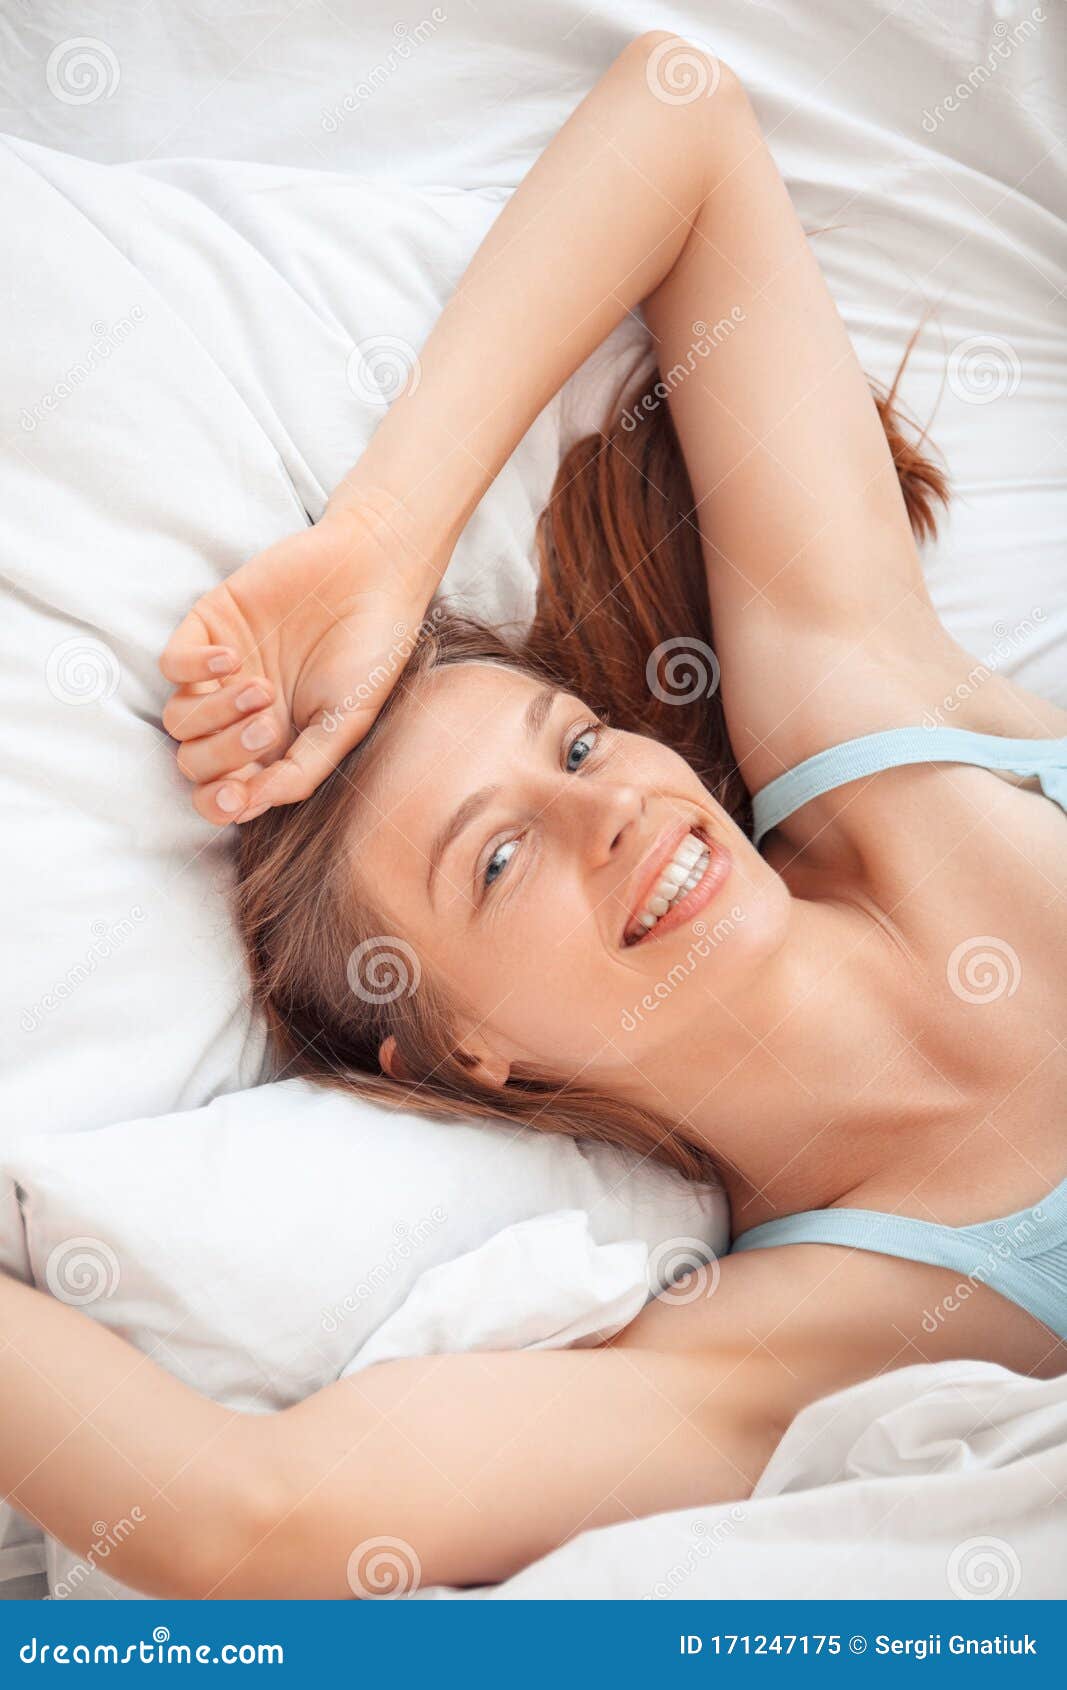 women in bed selfie